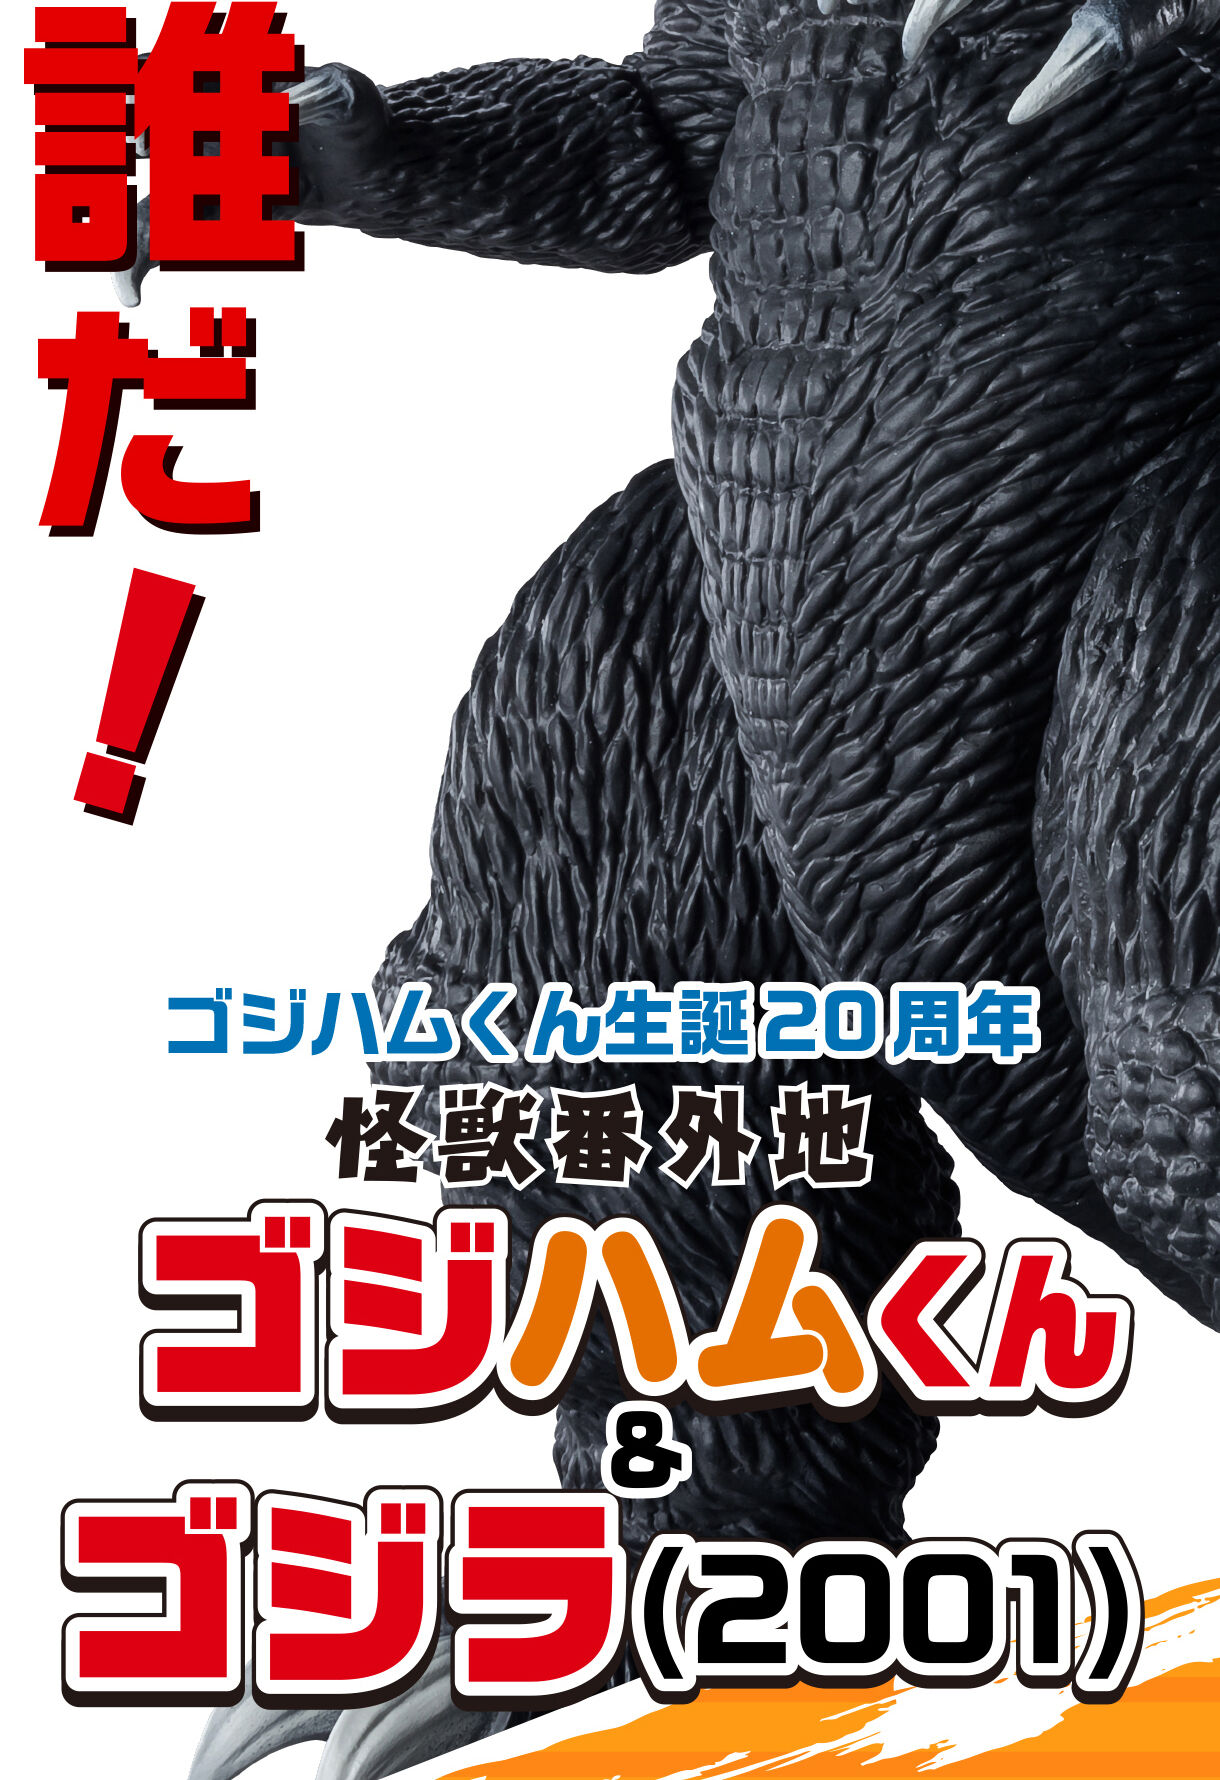 怪獣番外地 ゴジハムくん & ゴジラ(2001) | ゴジラシリーズ フィギュア ...